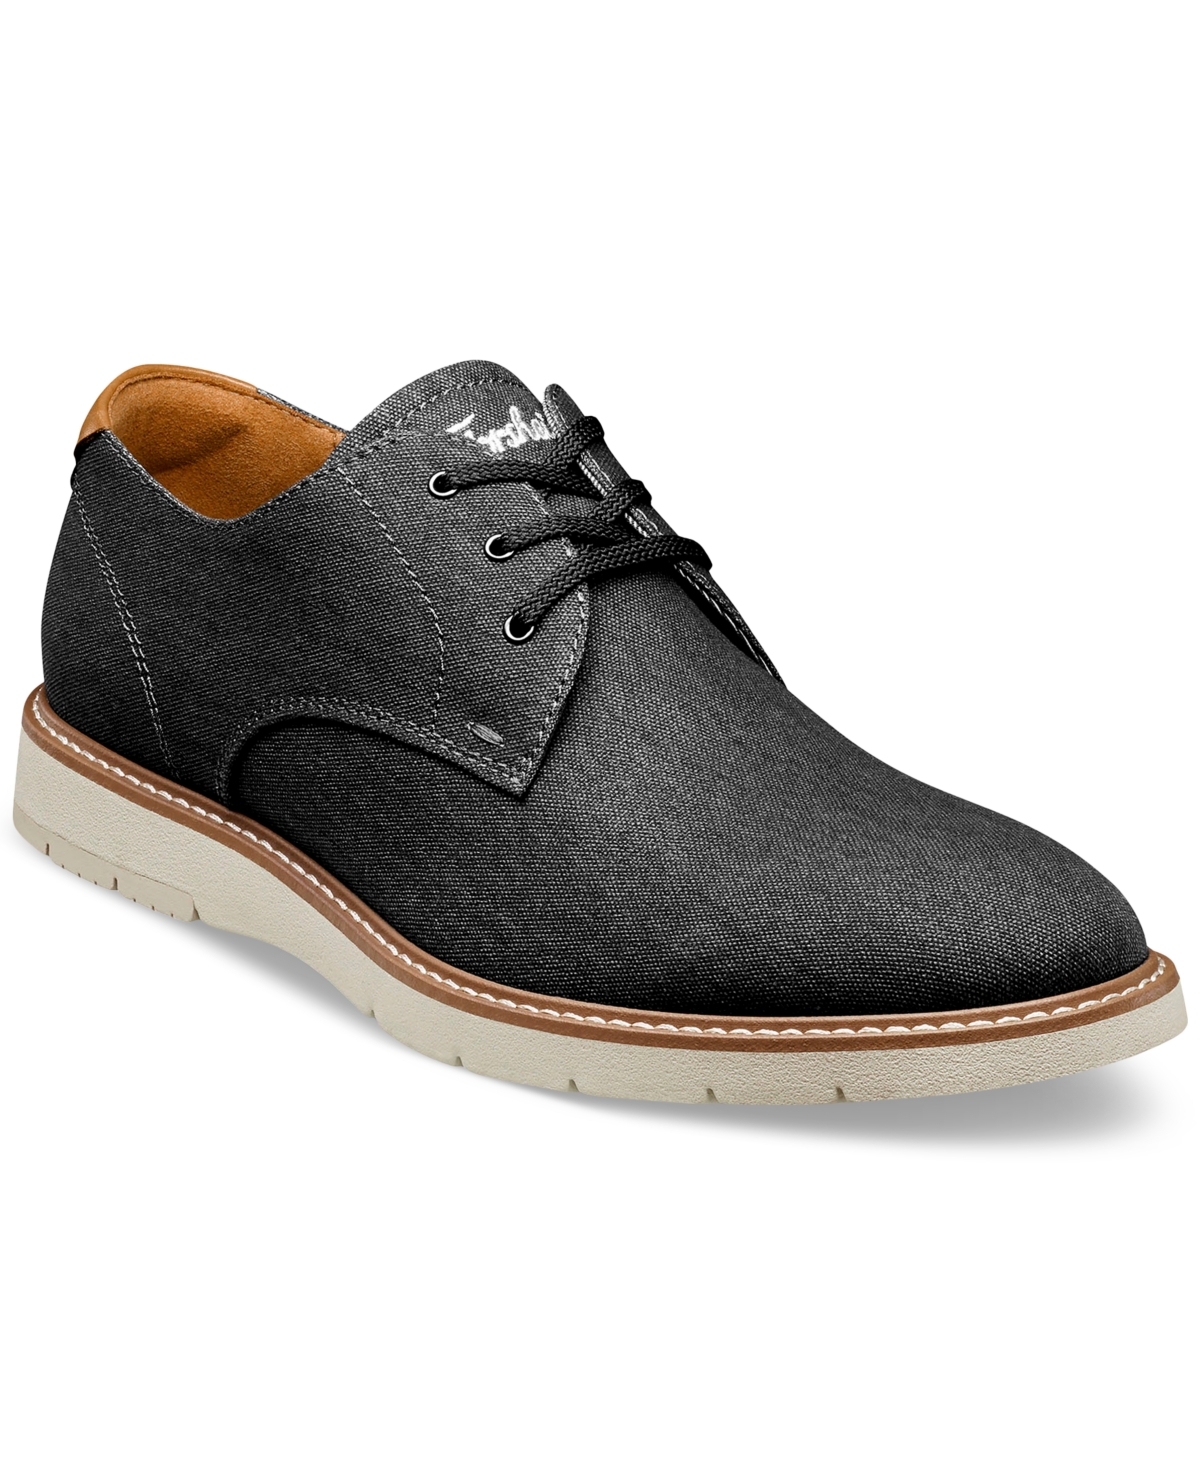 Men's Vibe Canvas Lace-Up Plain Toe Oxford Shoes - Black